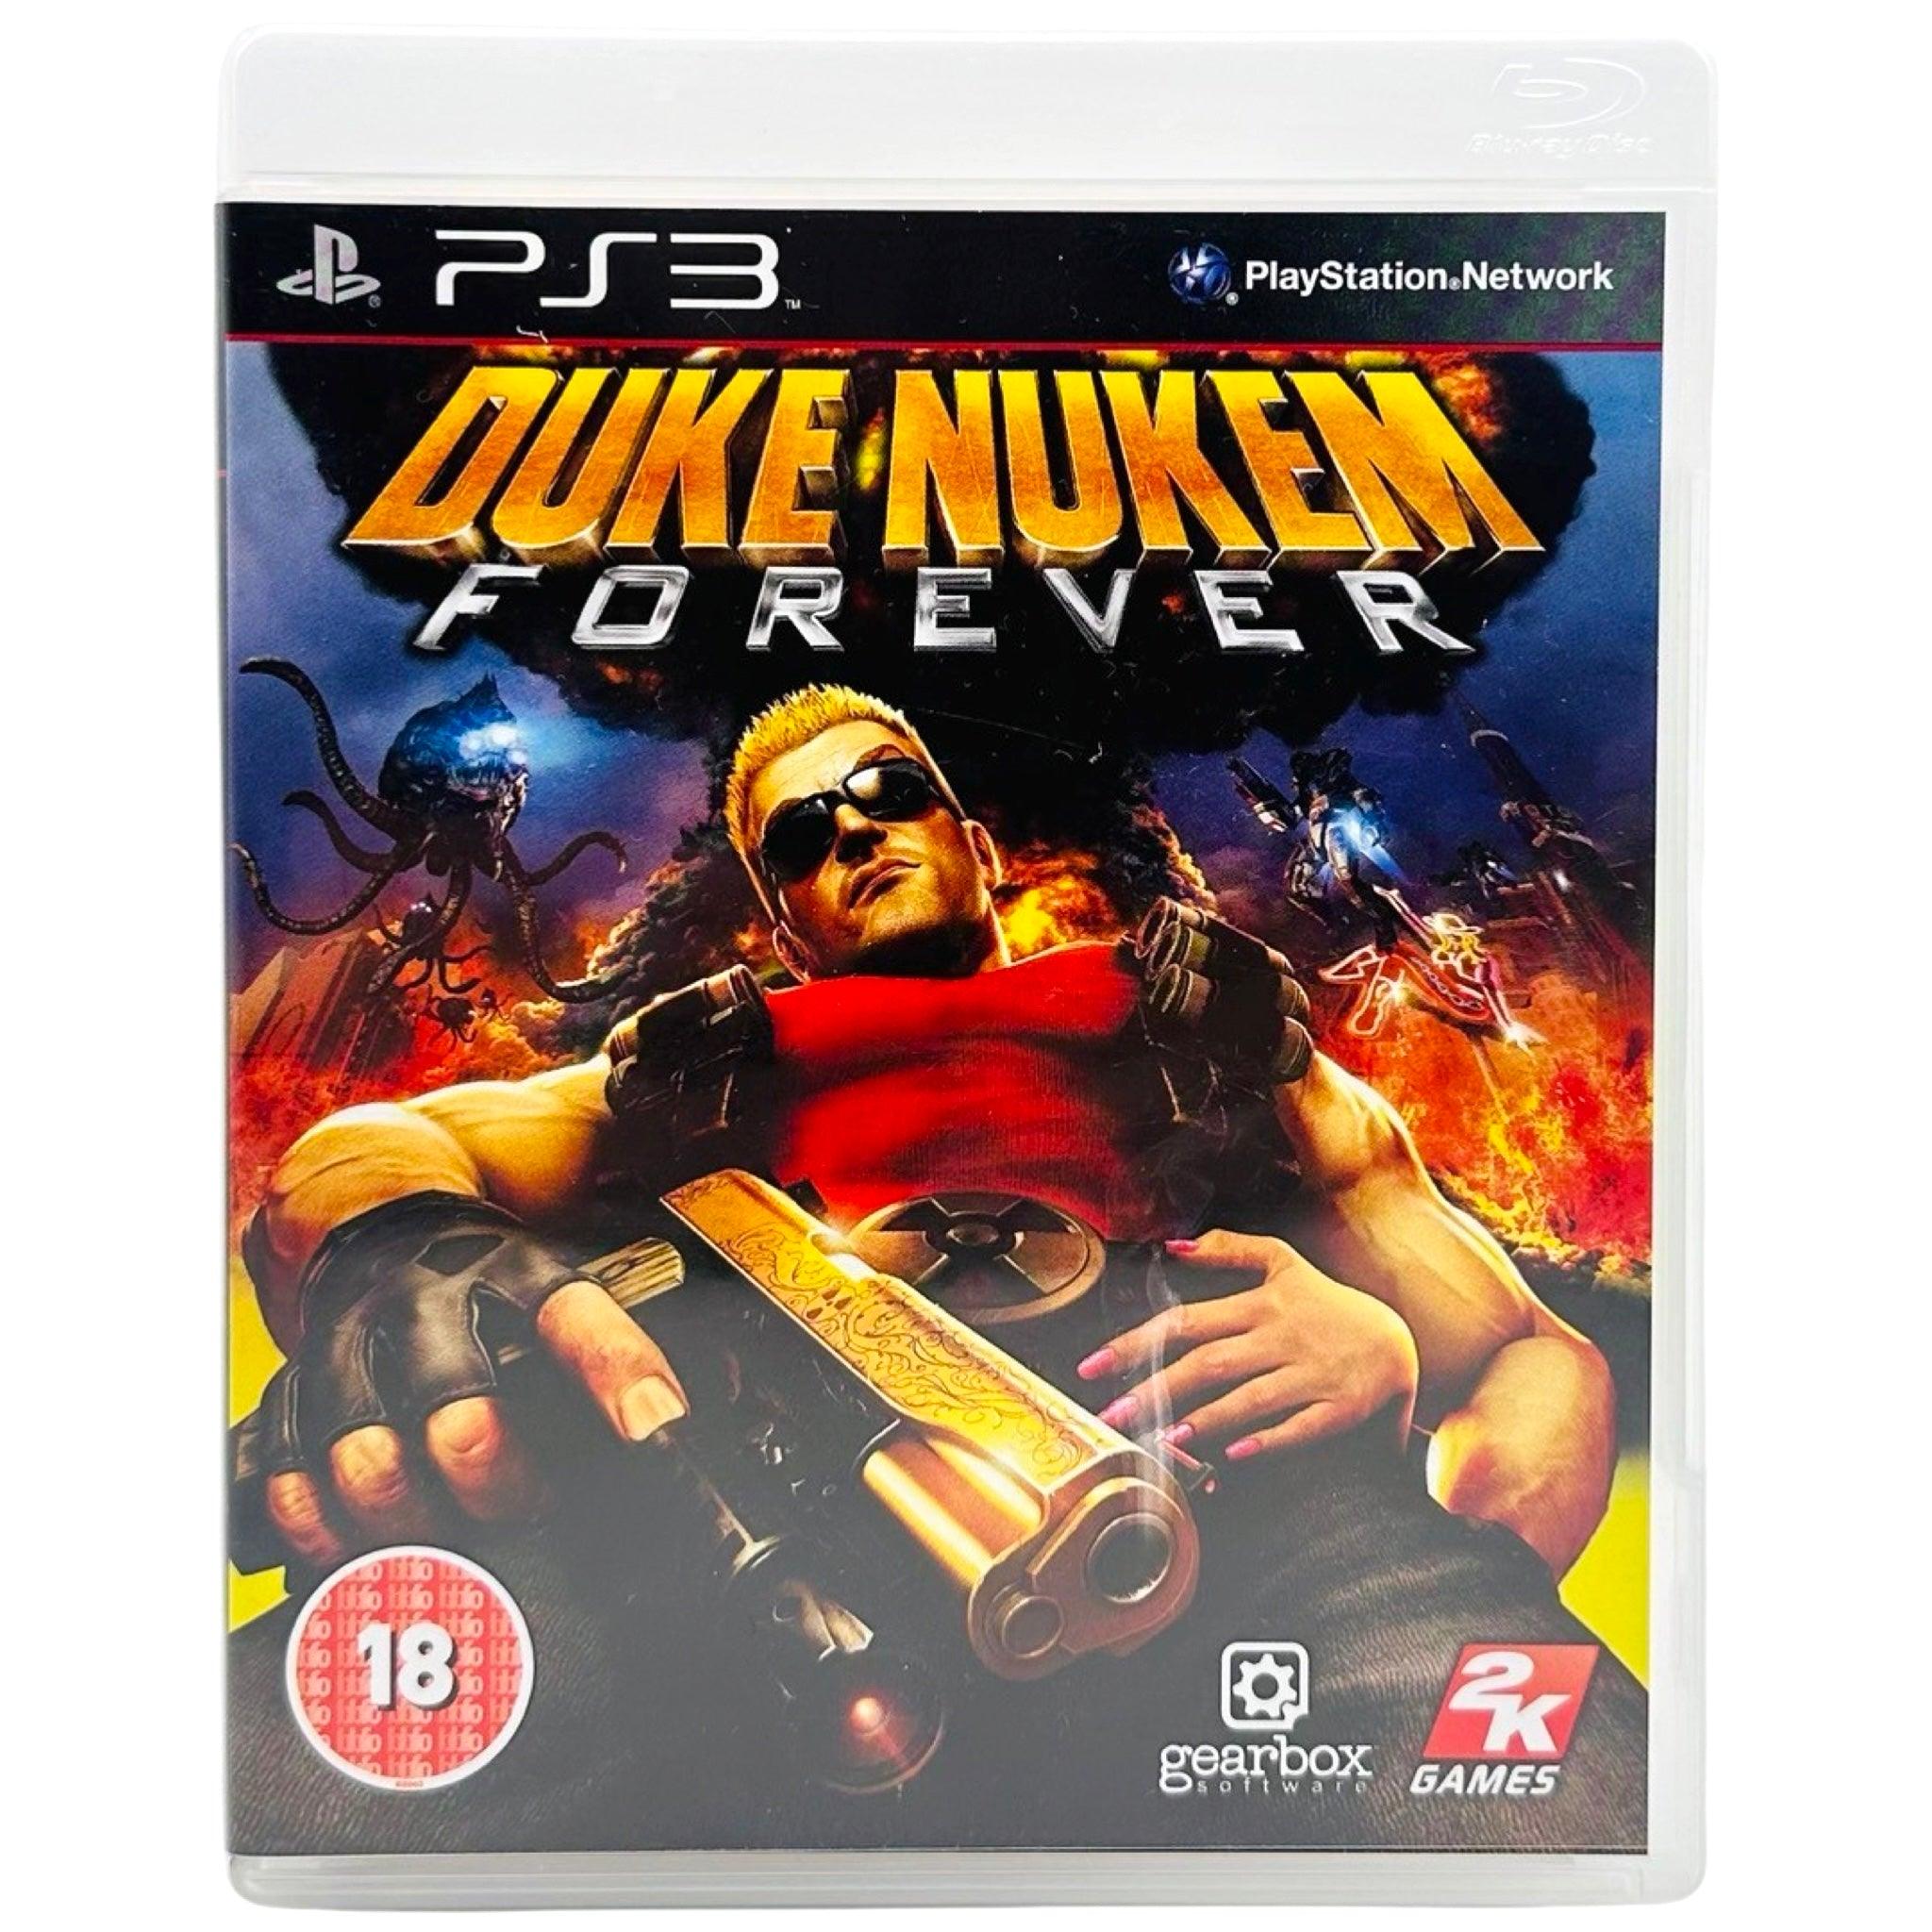 PS3: Duke Nukem Forever - RetroGaming.no